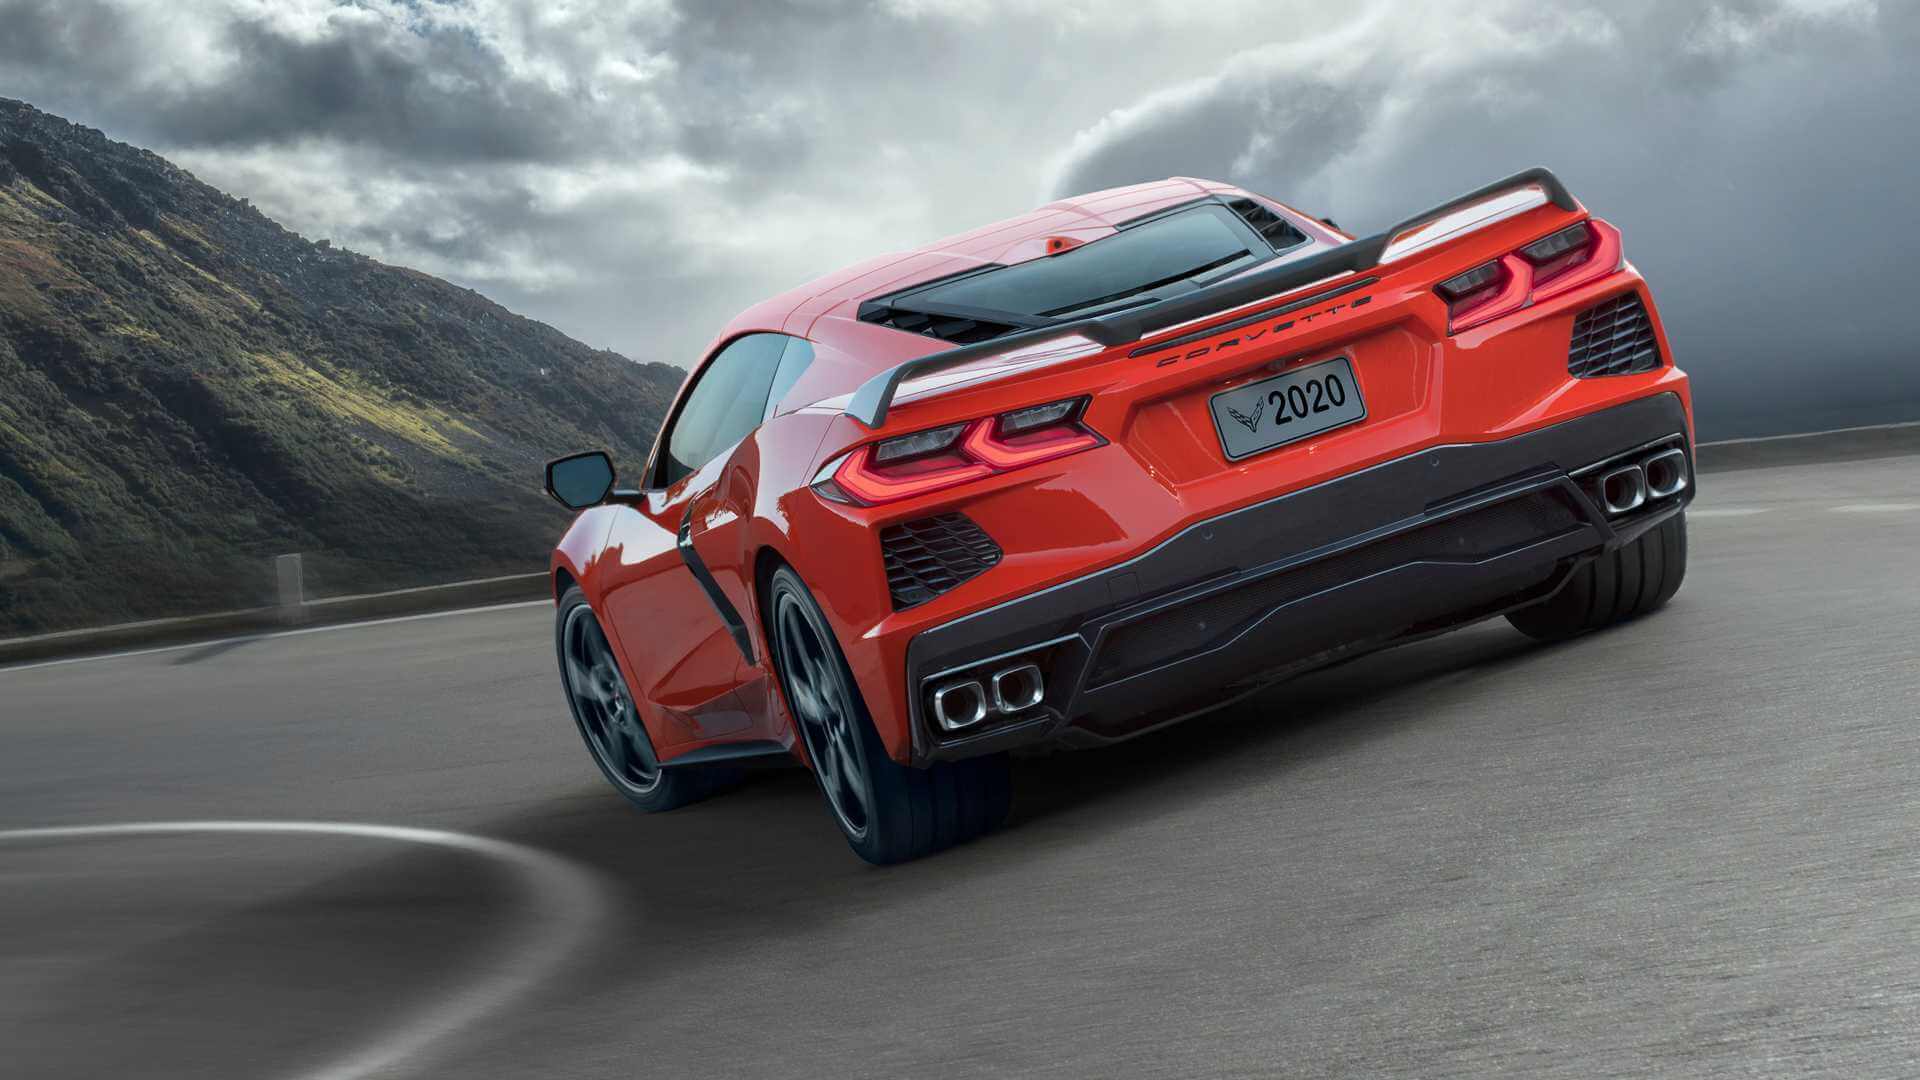 Stunning new Corvette for less than $60k